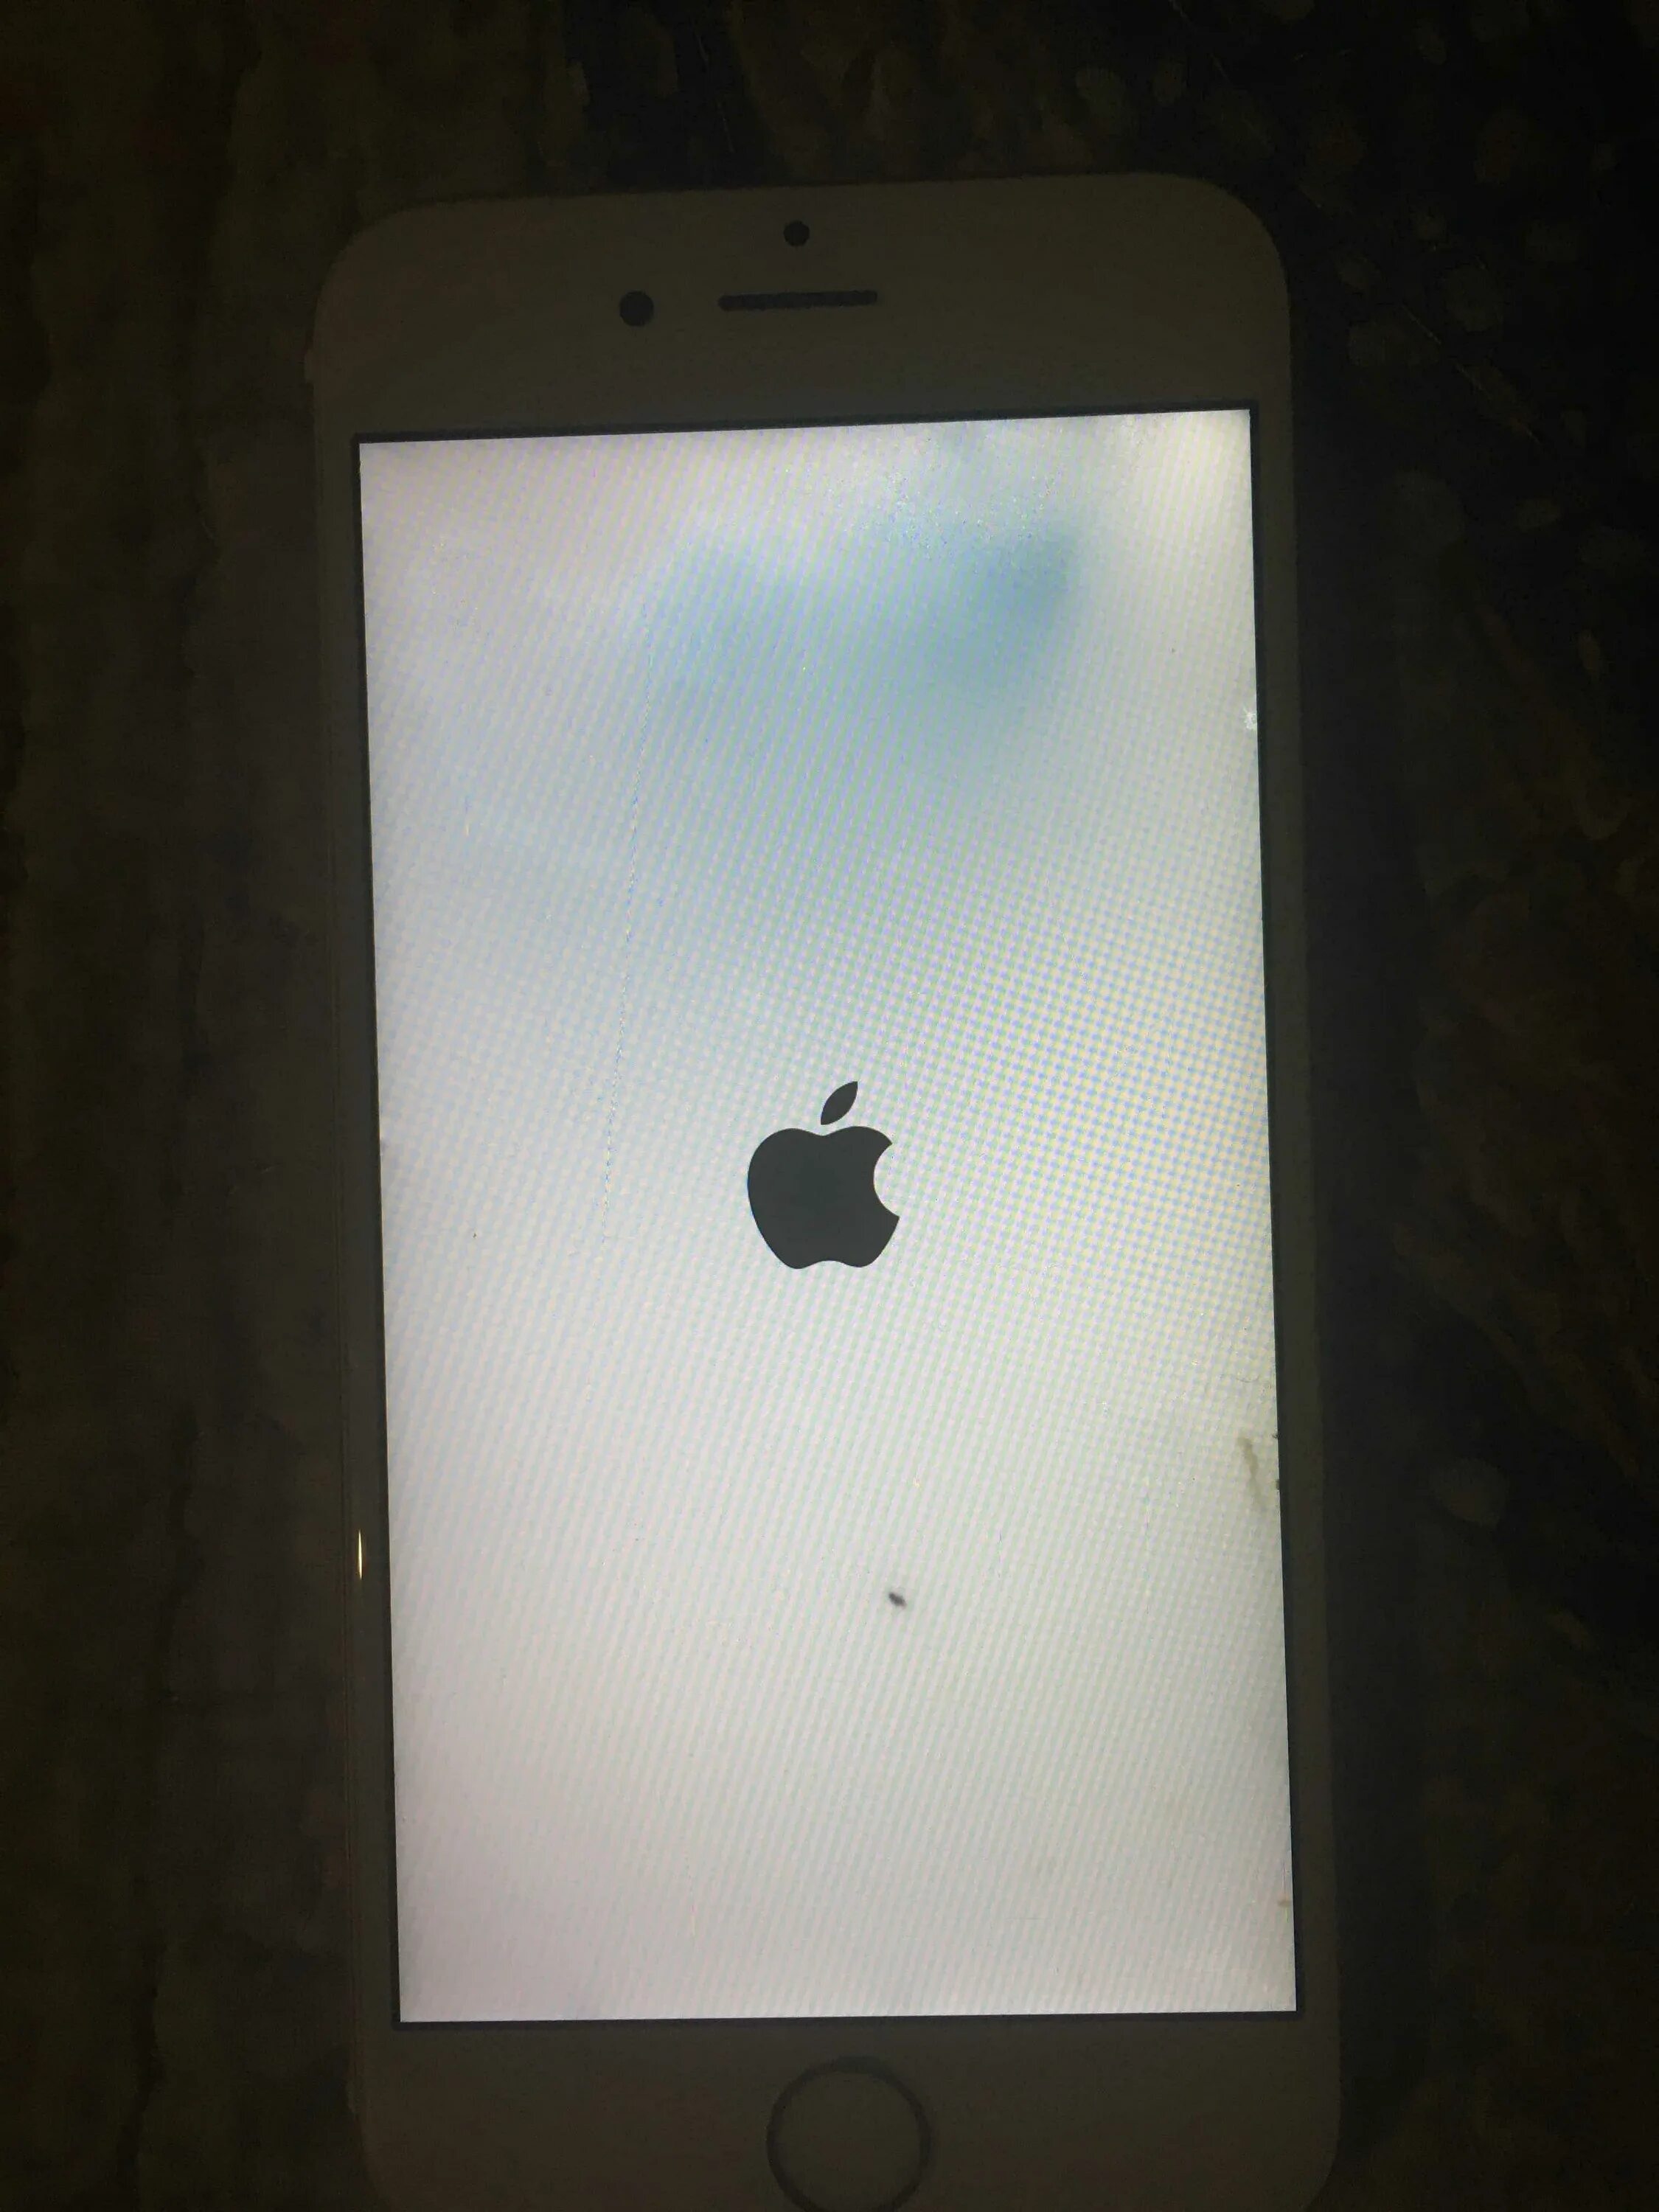 Не включается айфон 6 что делать. Iphone загорелся. Айфон выключился горит яблоко. На iphone горит яблоко. Айфон 6 горит яблоко.